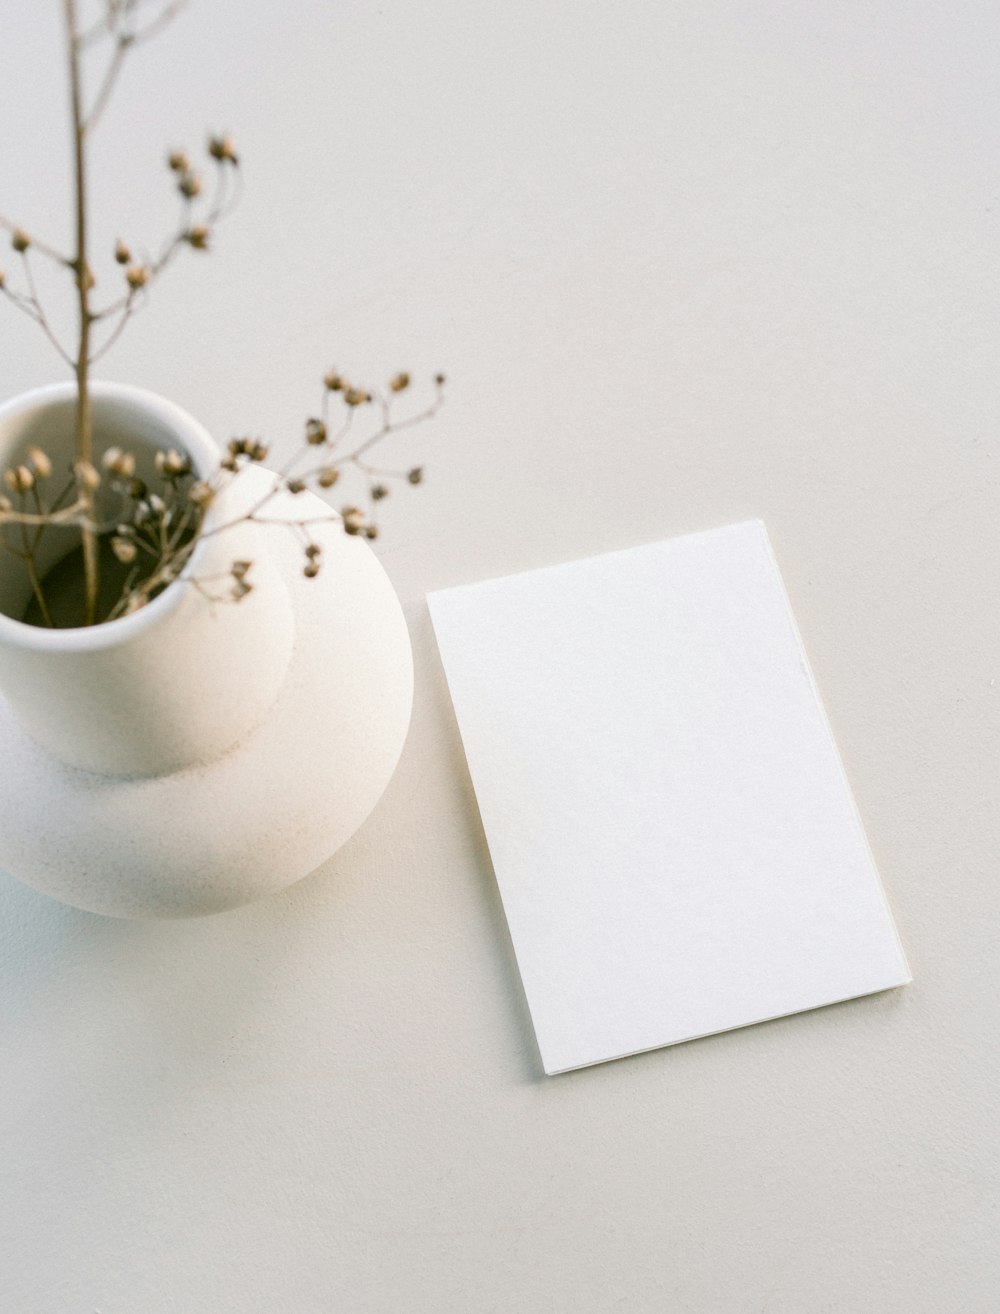 空白のカードの横に植物が入った白い花瓶